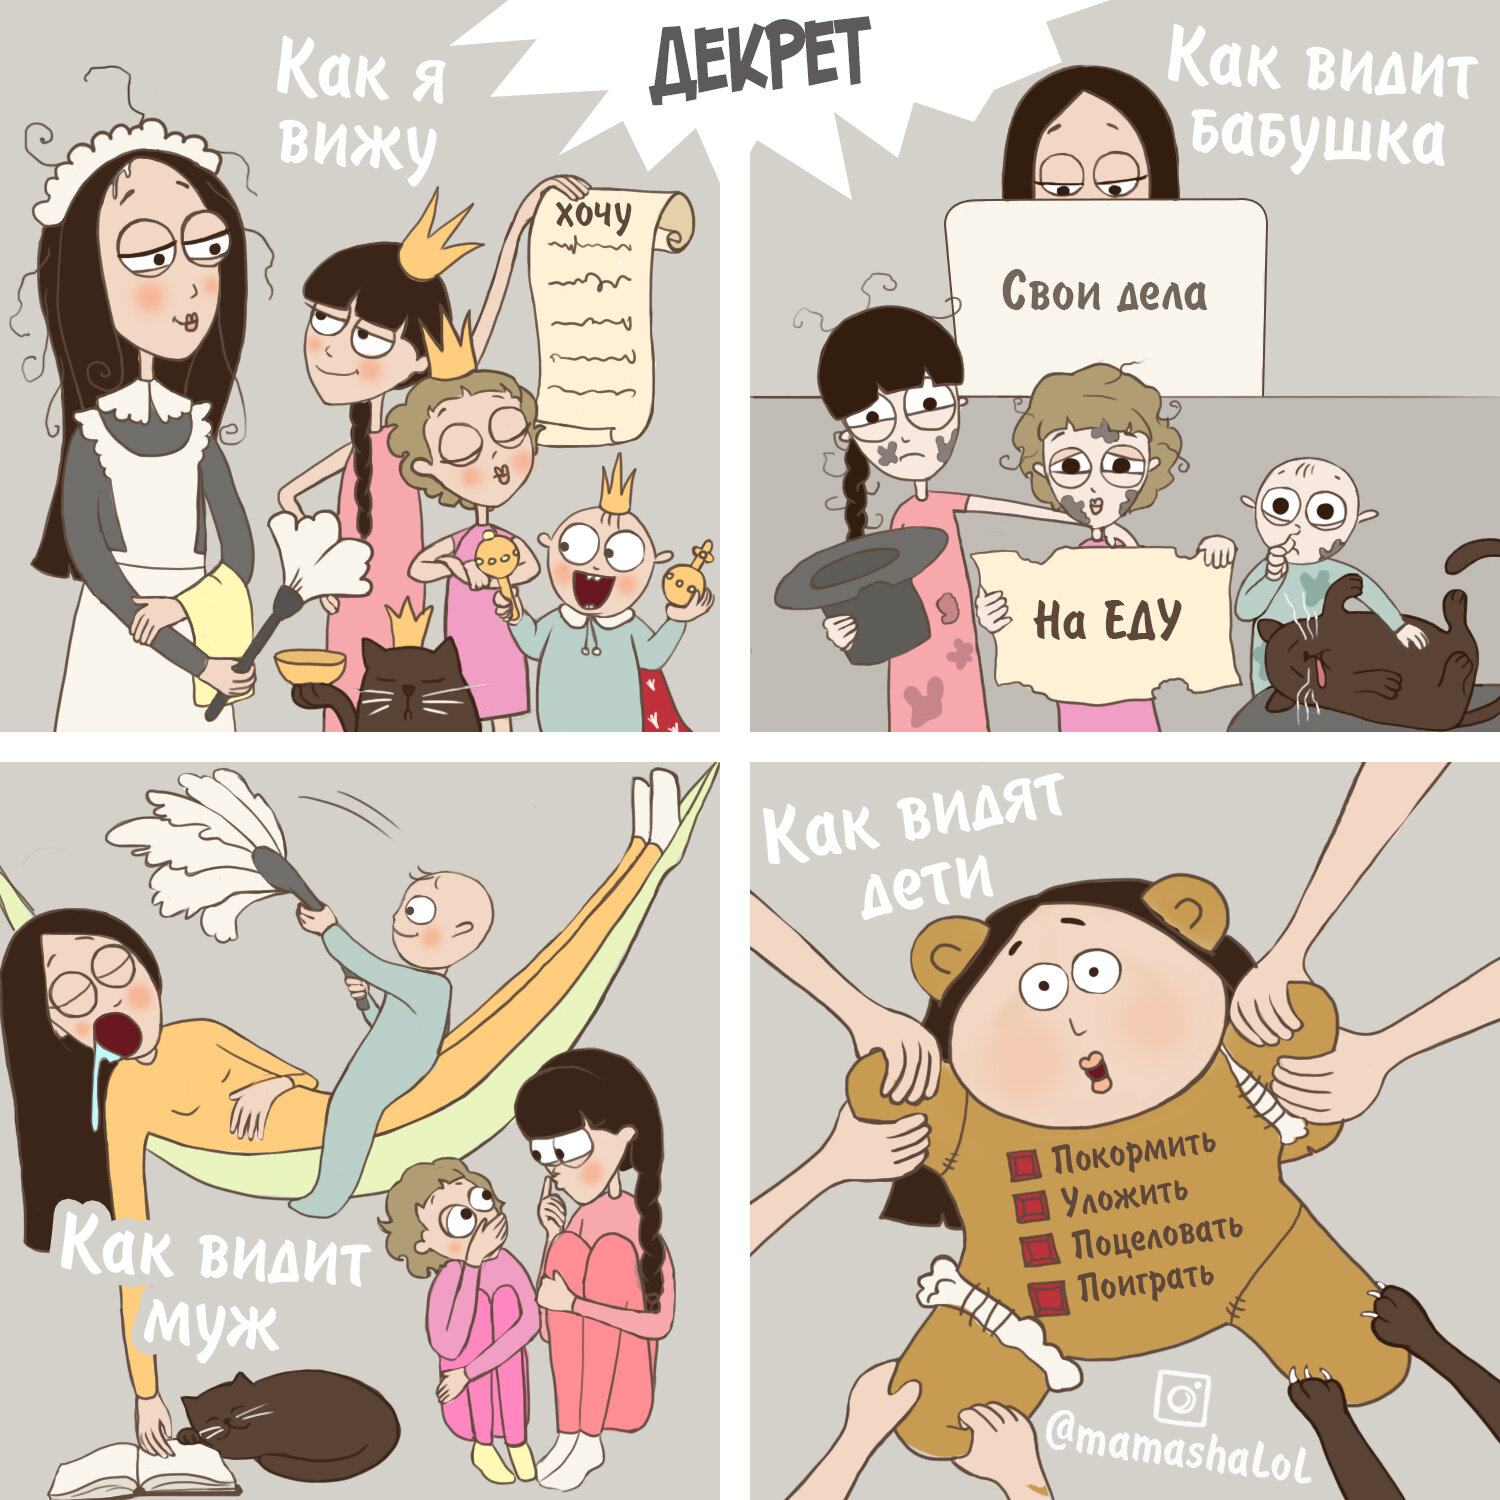 Многодетная мама делает юморные комиксы о радостях родительства. ФОТО